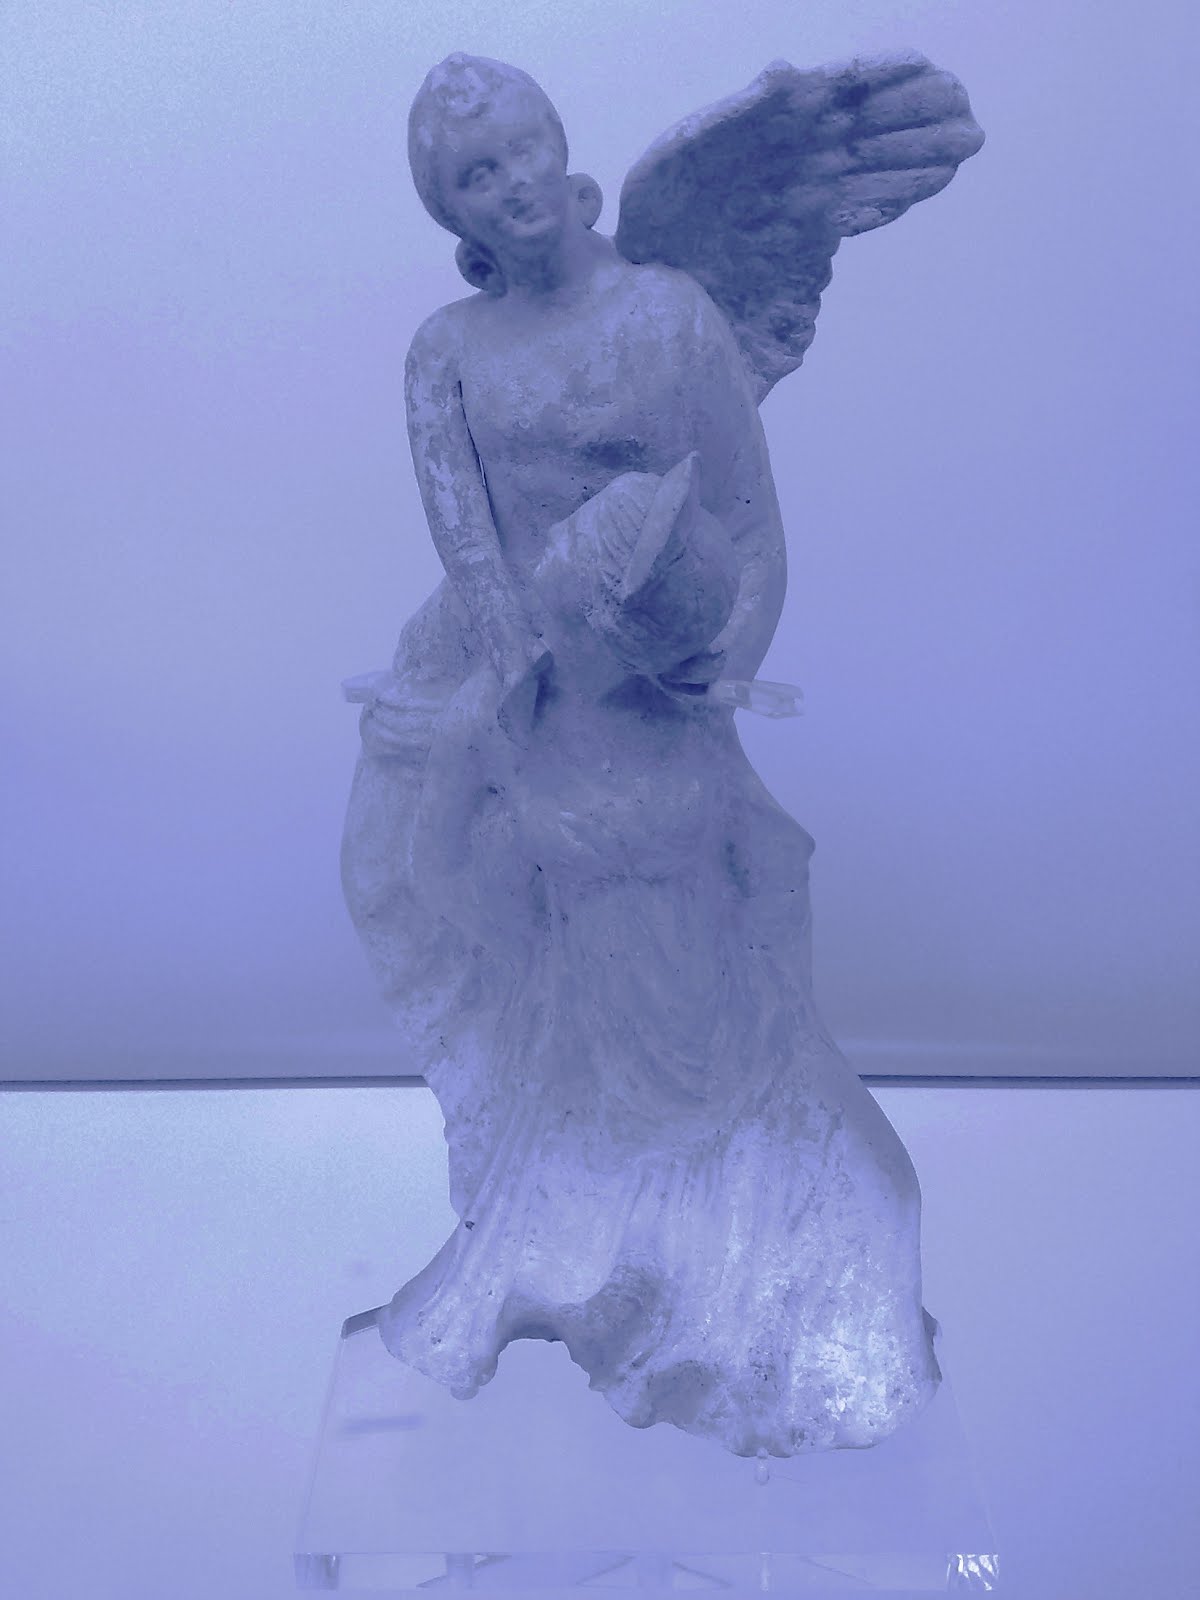 BRITISH MUSEUM ANTROPOMORPHIC ANGEL STATUETTE